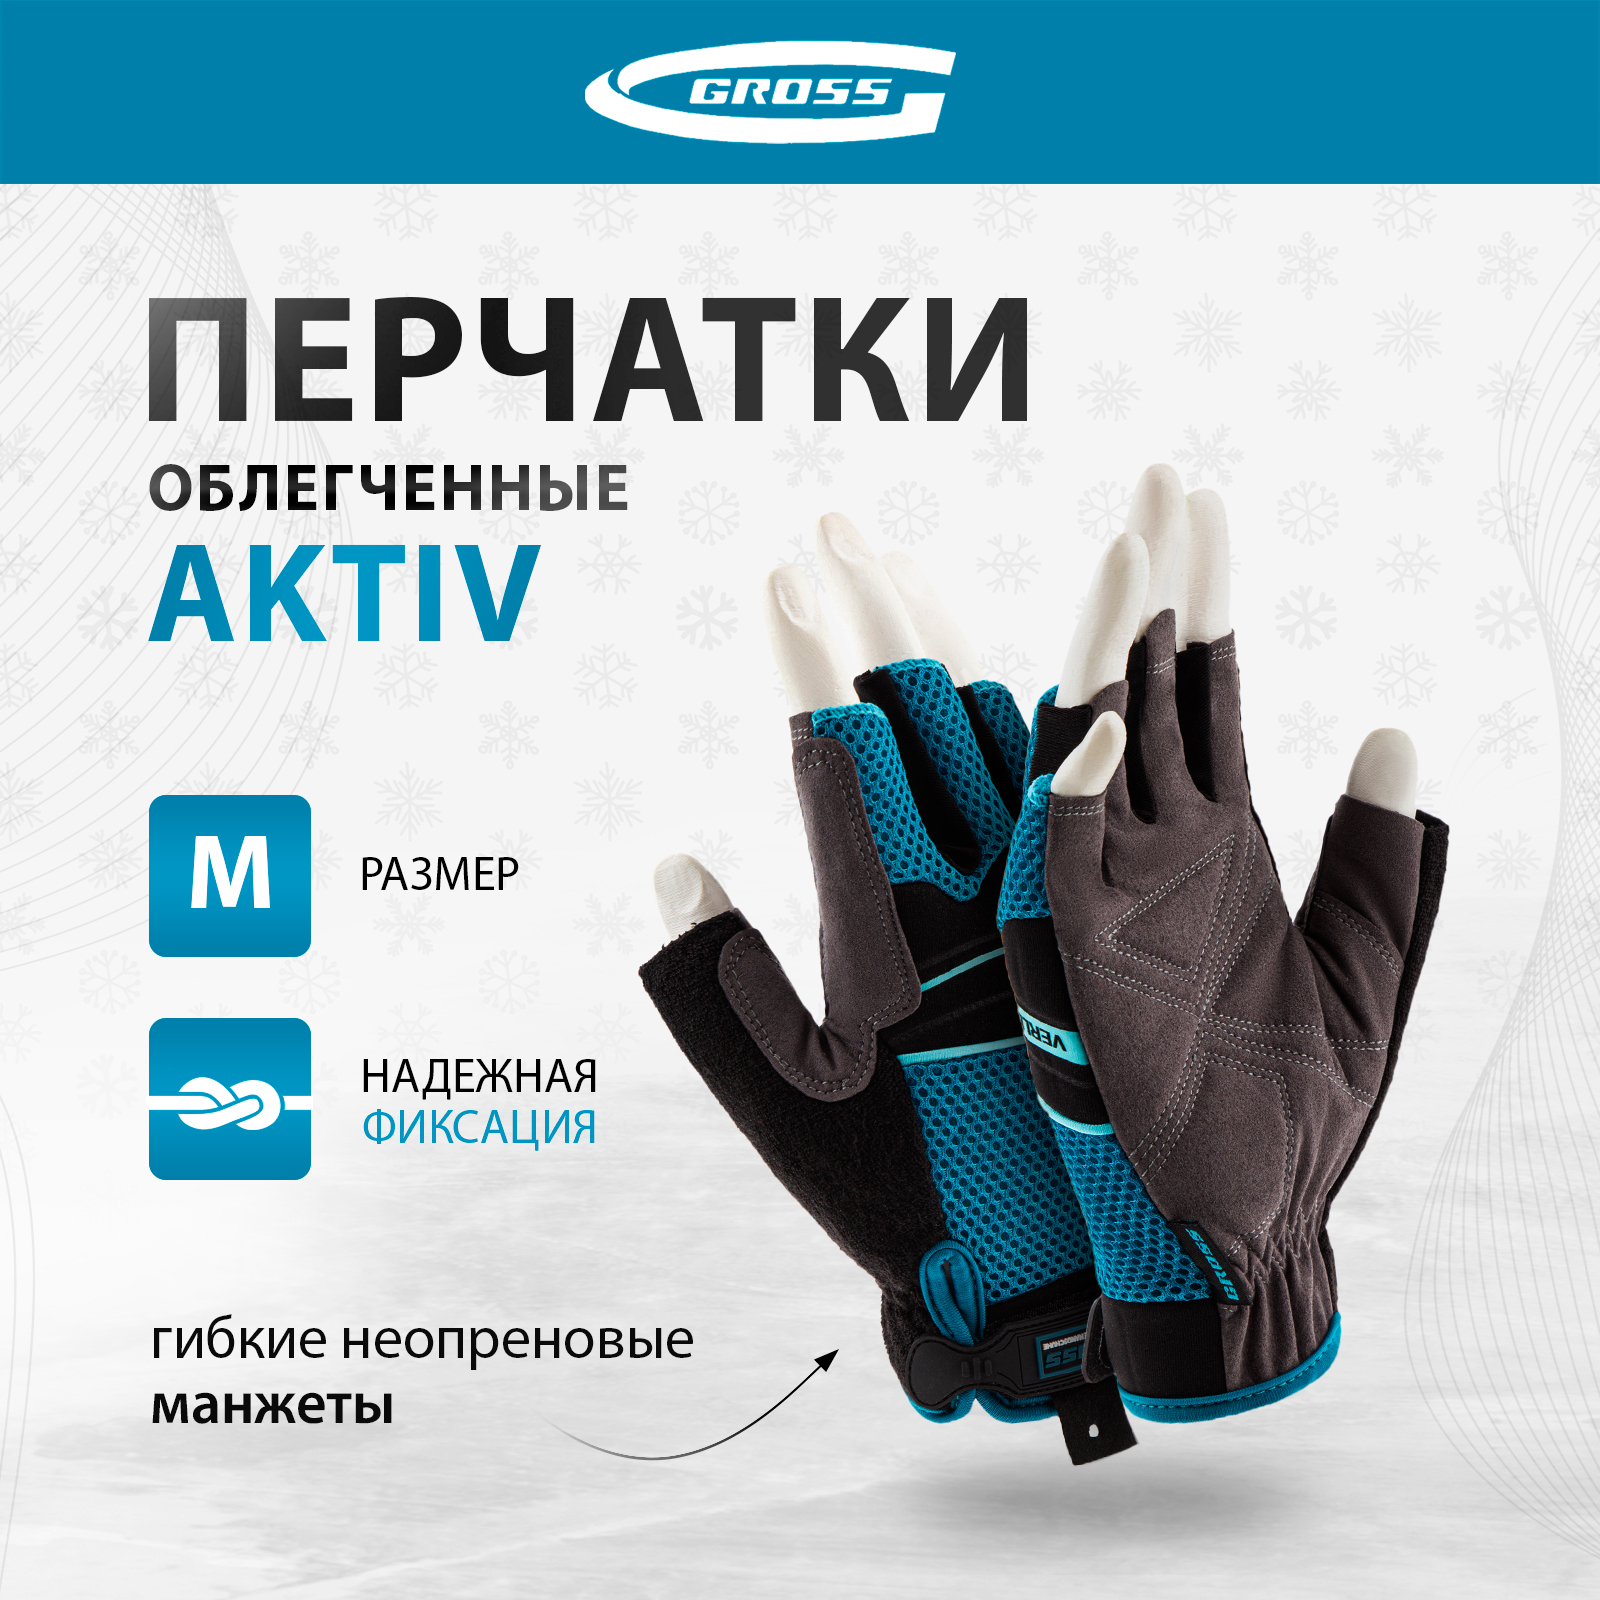 Перчатки комбинированные облегченные GROSS AKTIV открытые пальцыразмер М (8) 90308 комбинированные облегченные перчатки gross